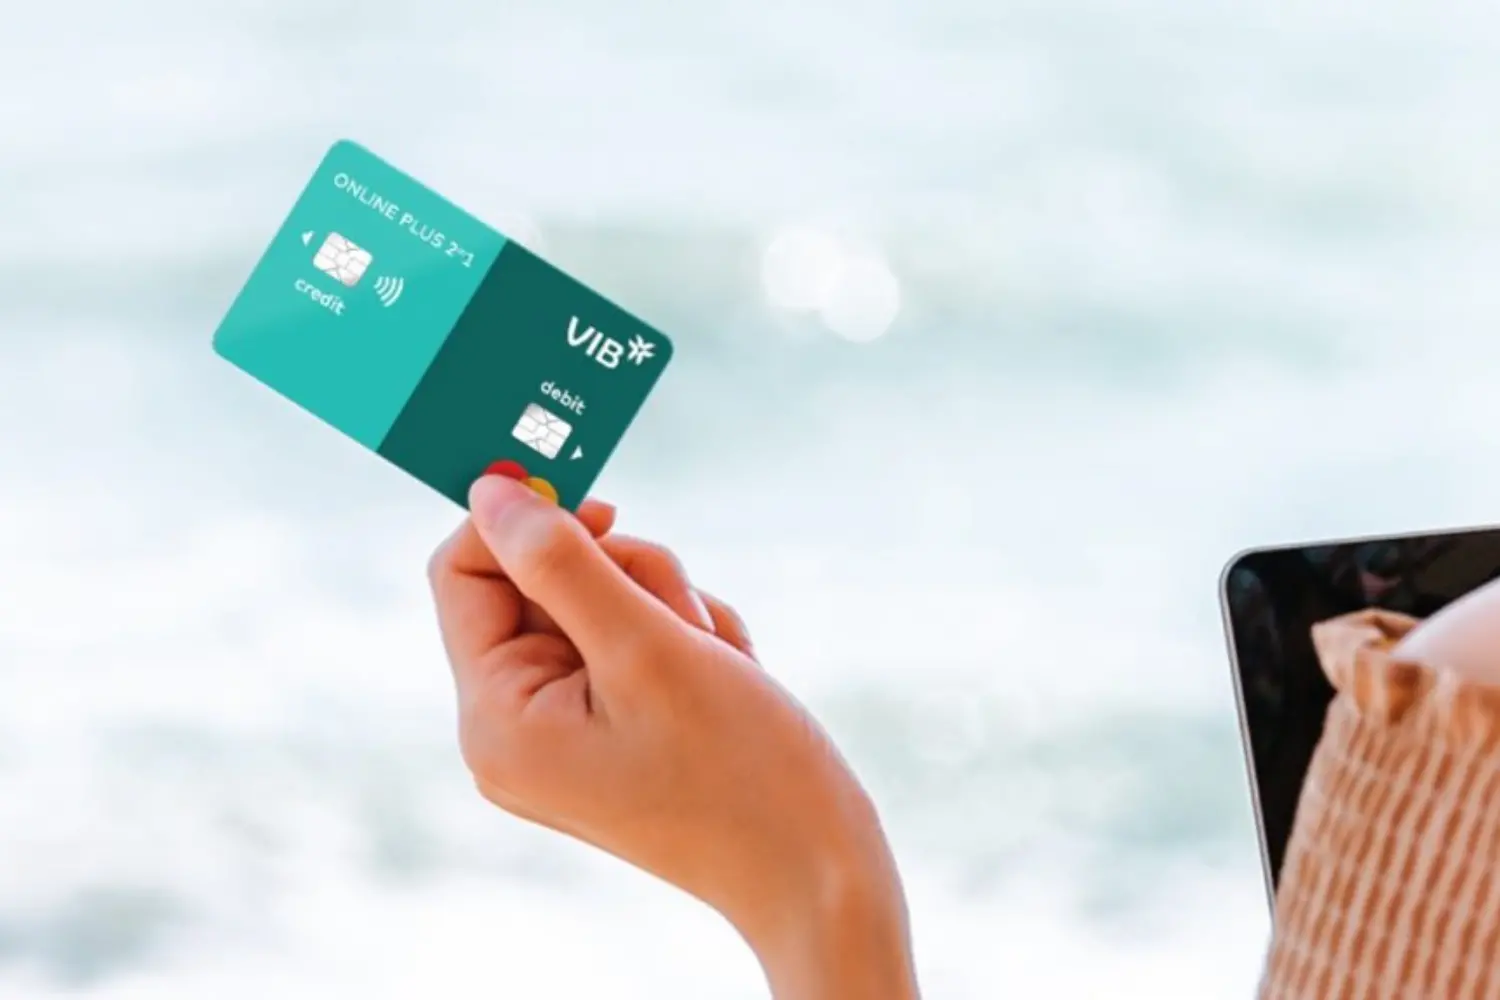  Thẻ ghi nợ nội địa giúp người dùng tiết kiệm chi phí hiệu quả